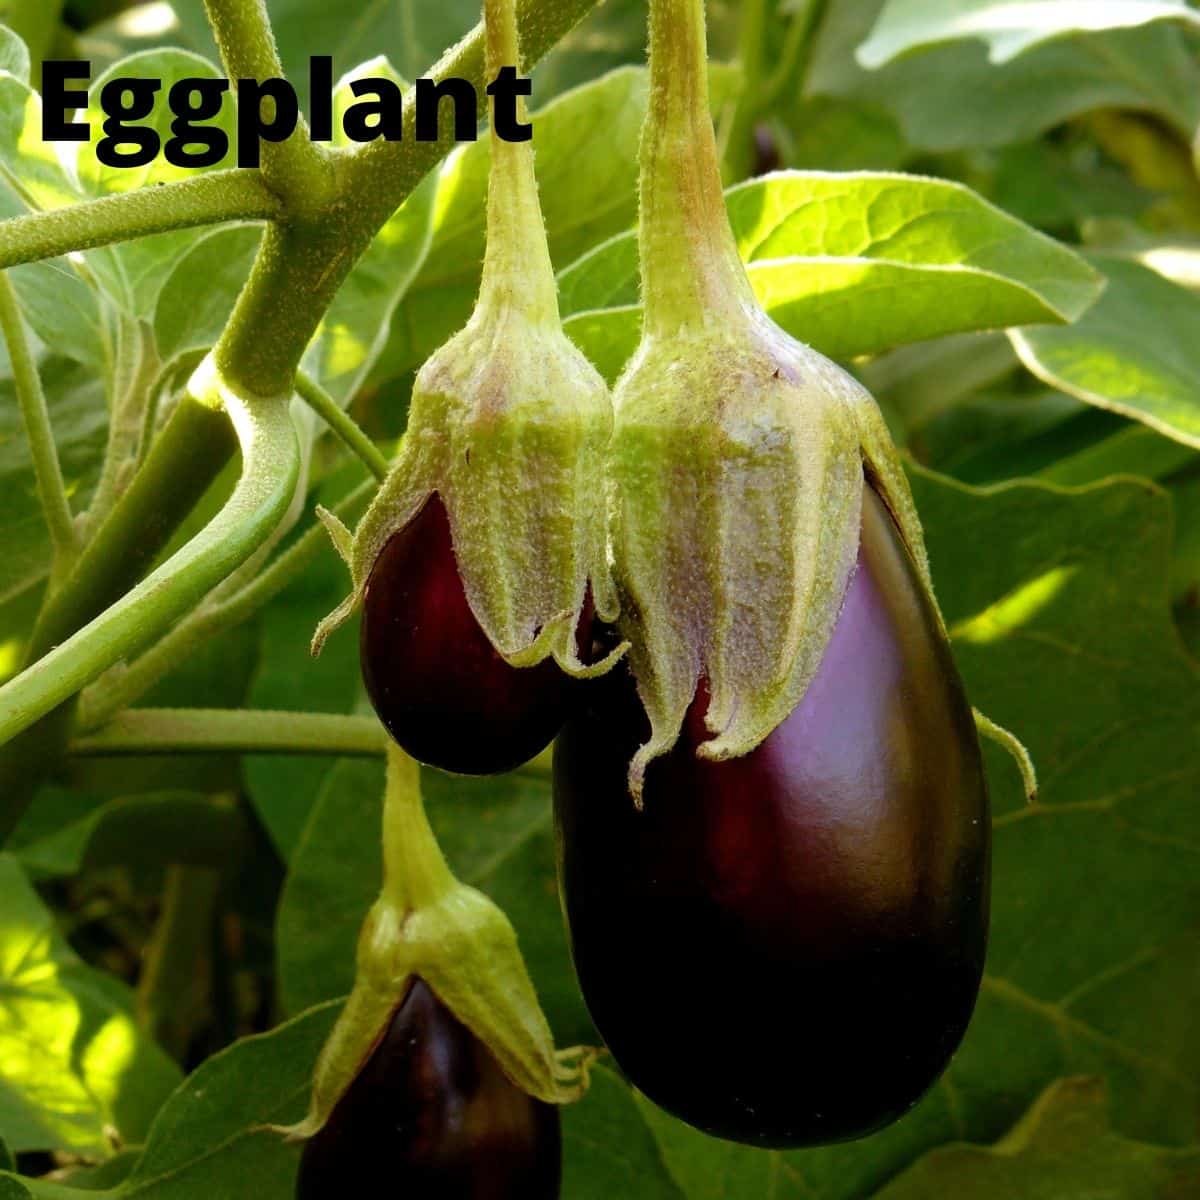 Eggplants growing on vine. 